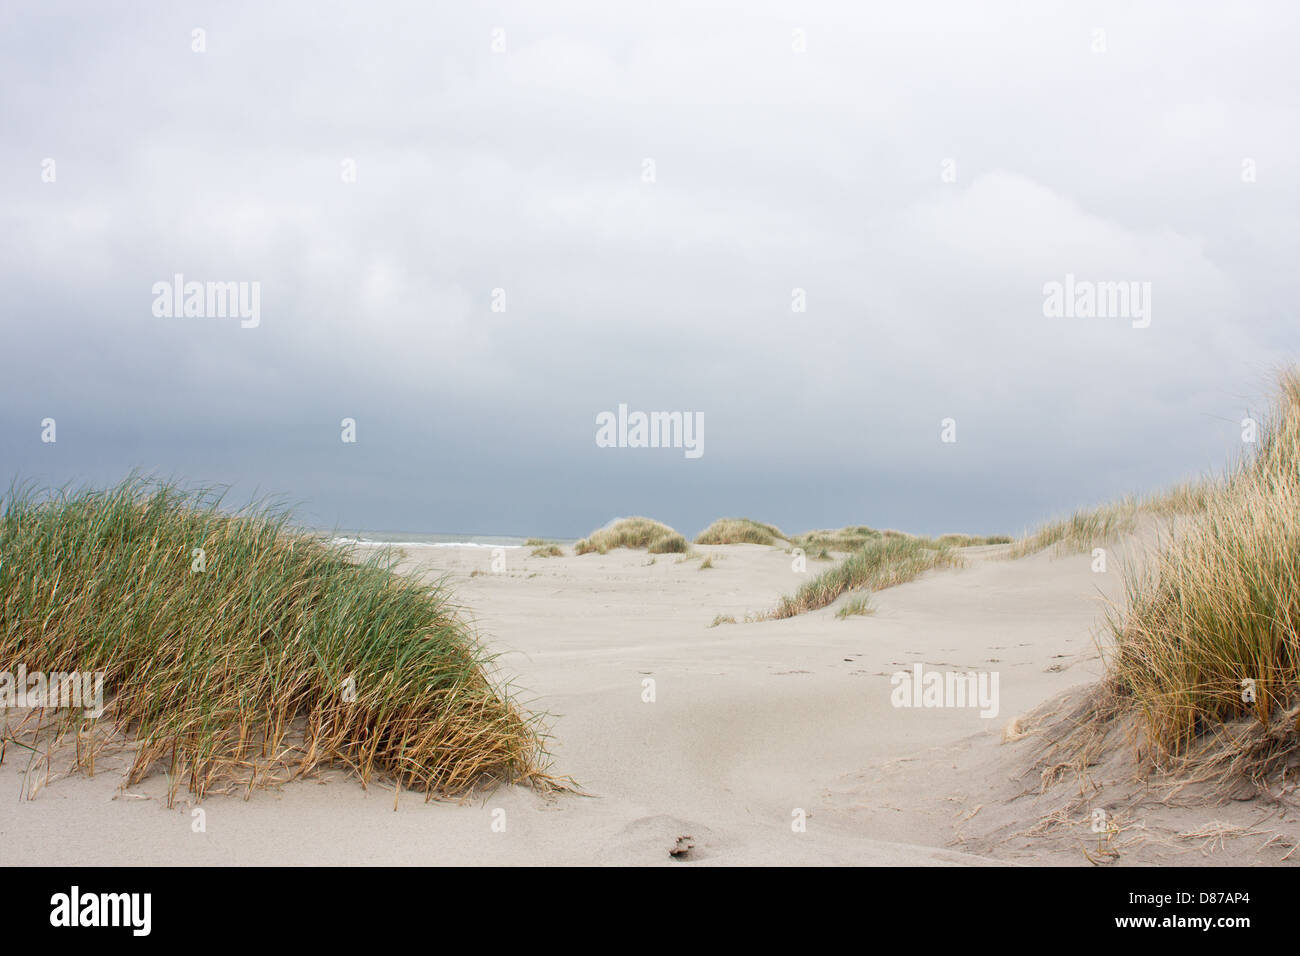 Strandhafer oder Marramgrass in den Dünen unter einem dunklen Himmel Stockfoto